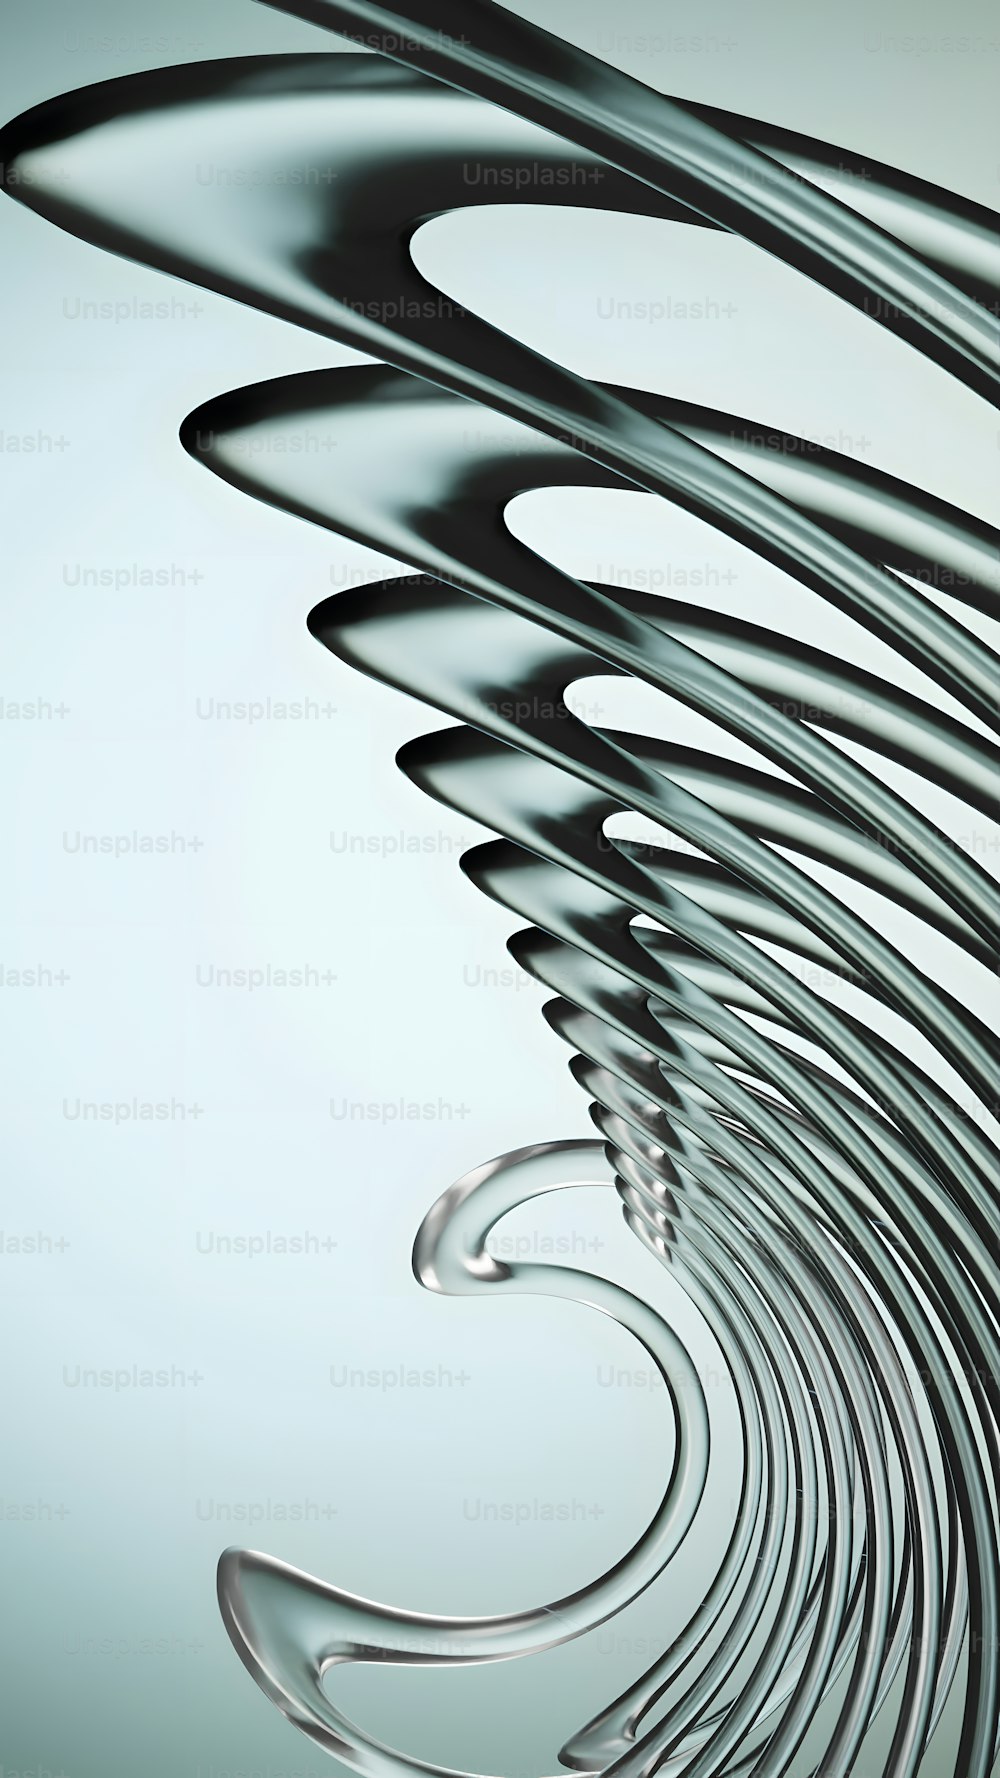 Una foto abstracta de un diseño en espiral sobre un fondo azul